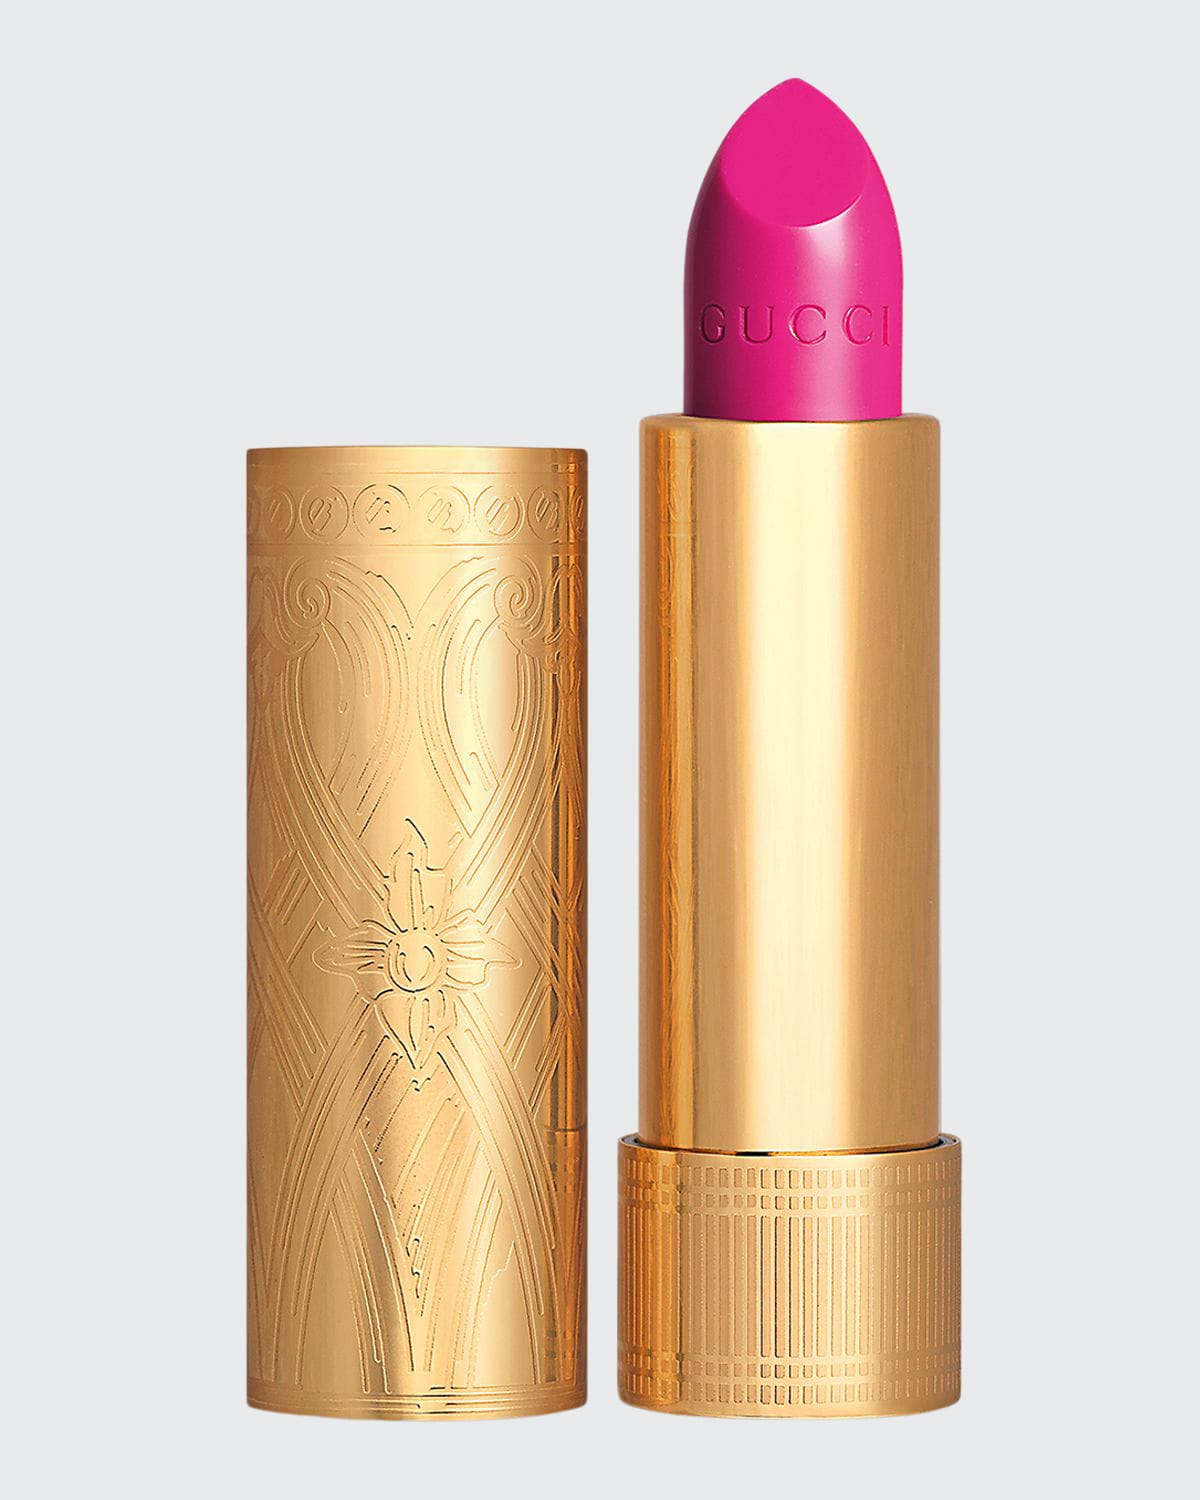 Gucci Rouge &#224 L&#232vres Satin Lipstick In 402 Fuchsia